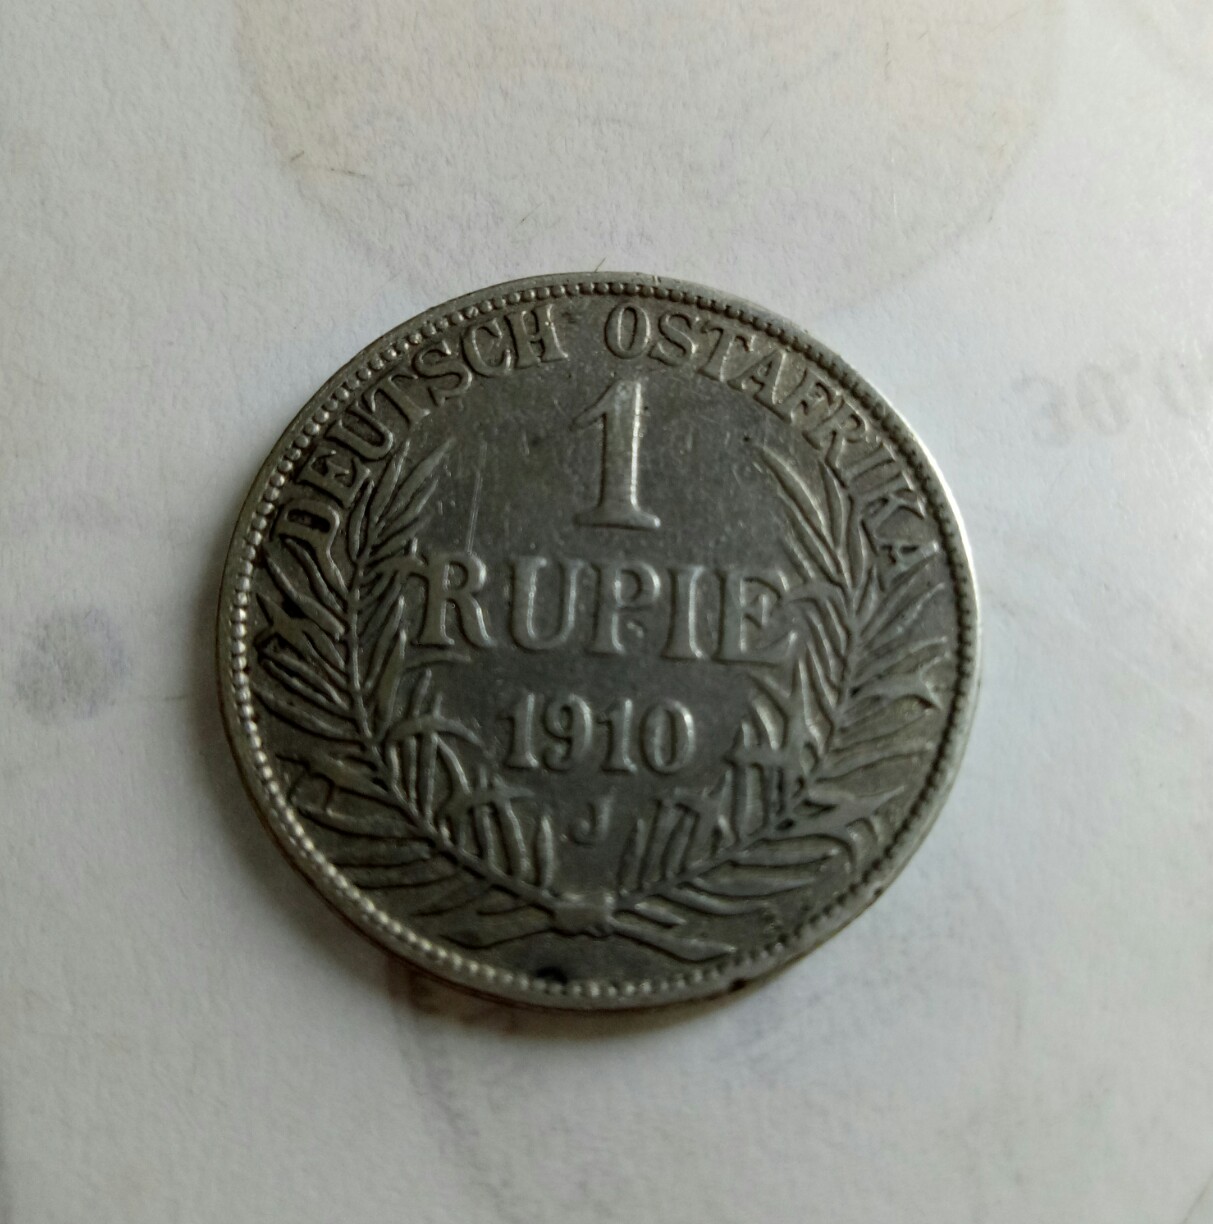 1 rupie 1910 deutsch ostafrika